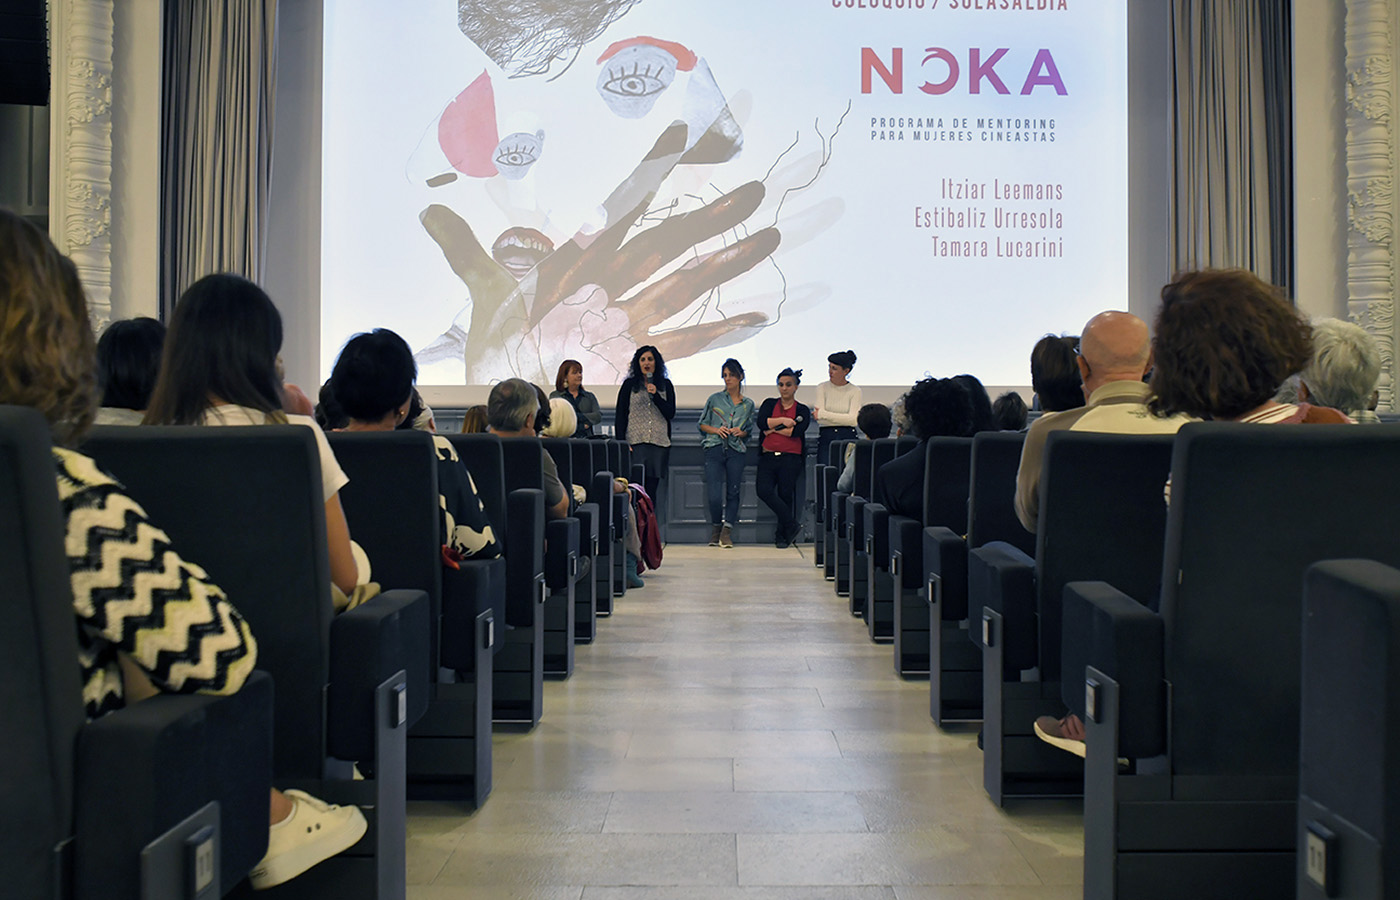 Presentación: Programa NOKA Mentoring